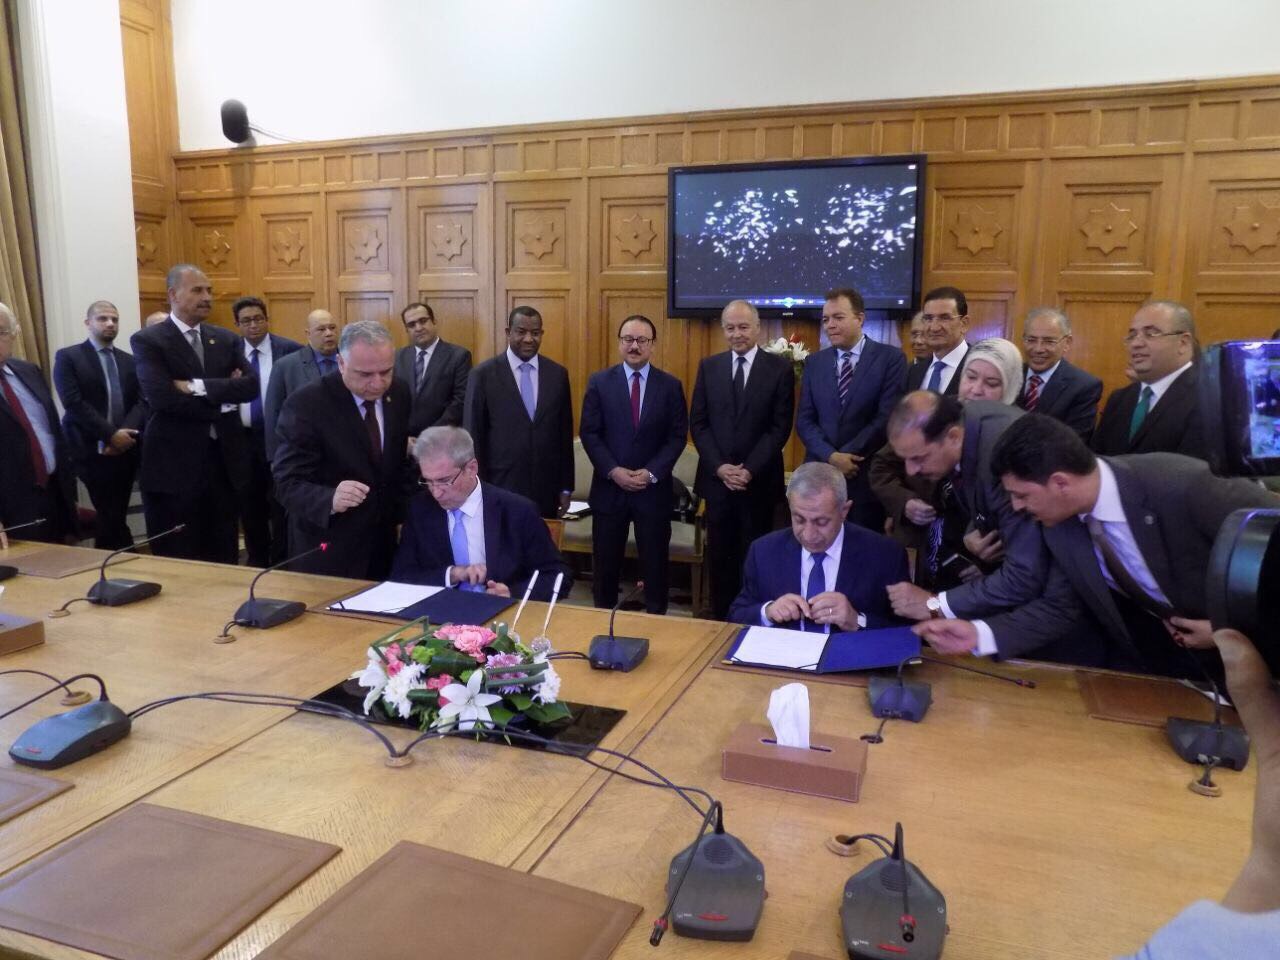 توقيع عقد شراء مبنى الأكاديمية العربية للعلوم والتكنولوجيا والنقل البحري الجديد بالقرية الذكية